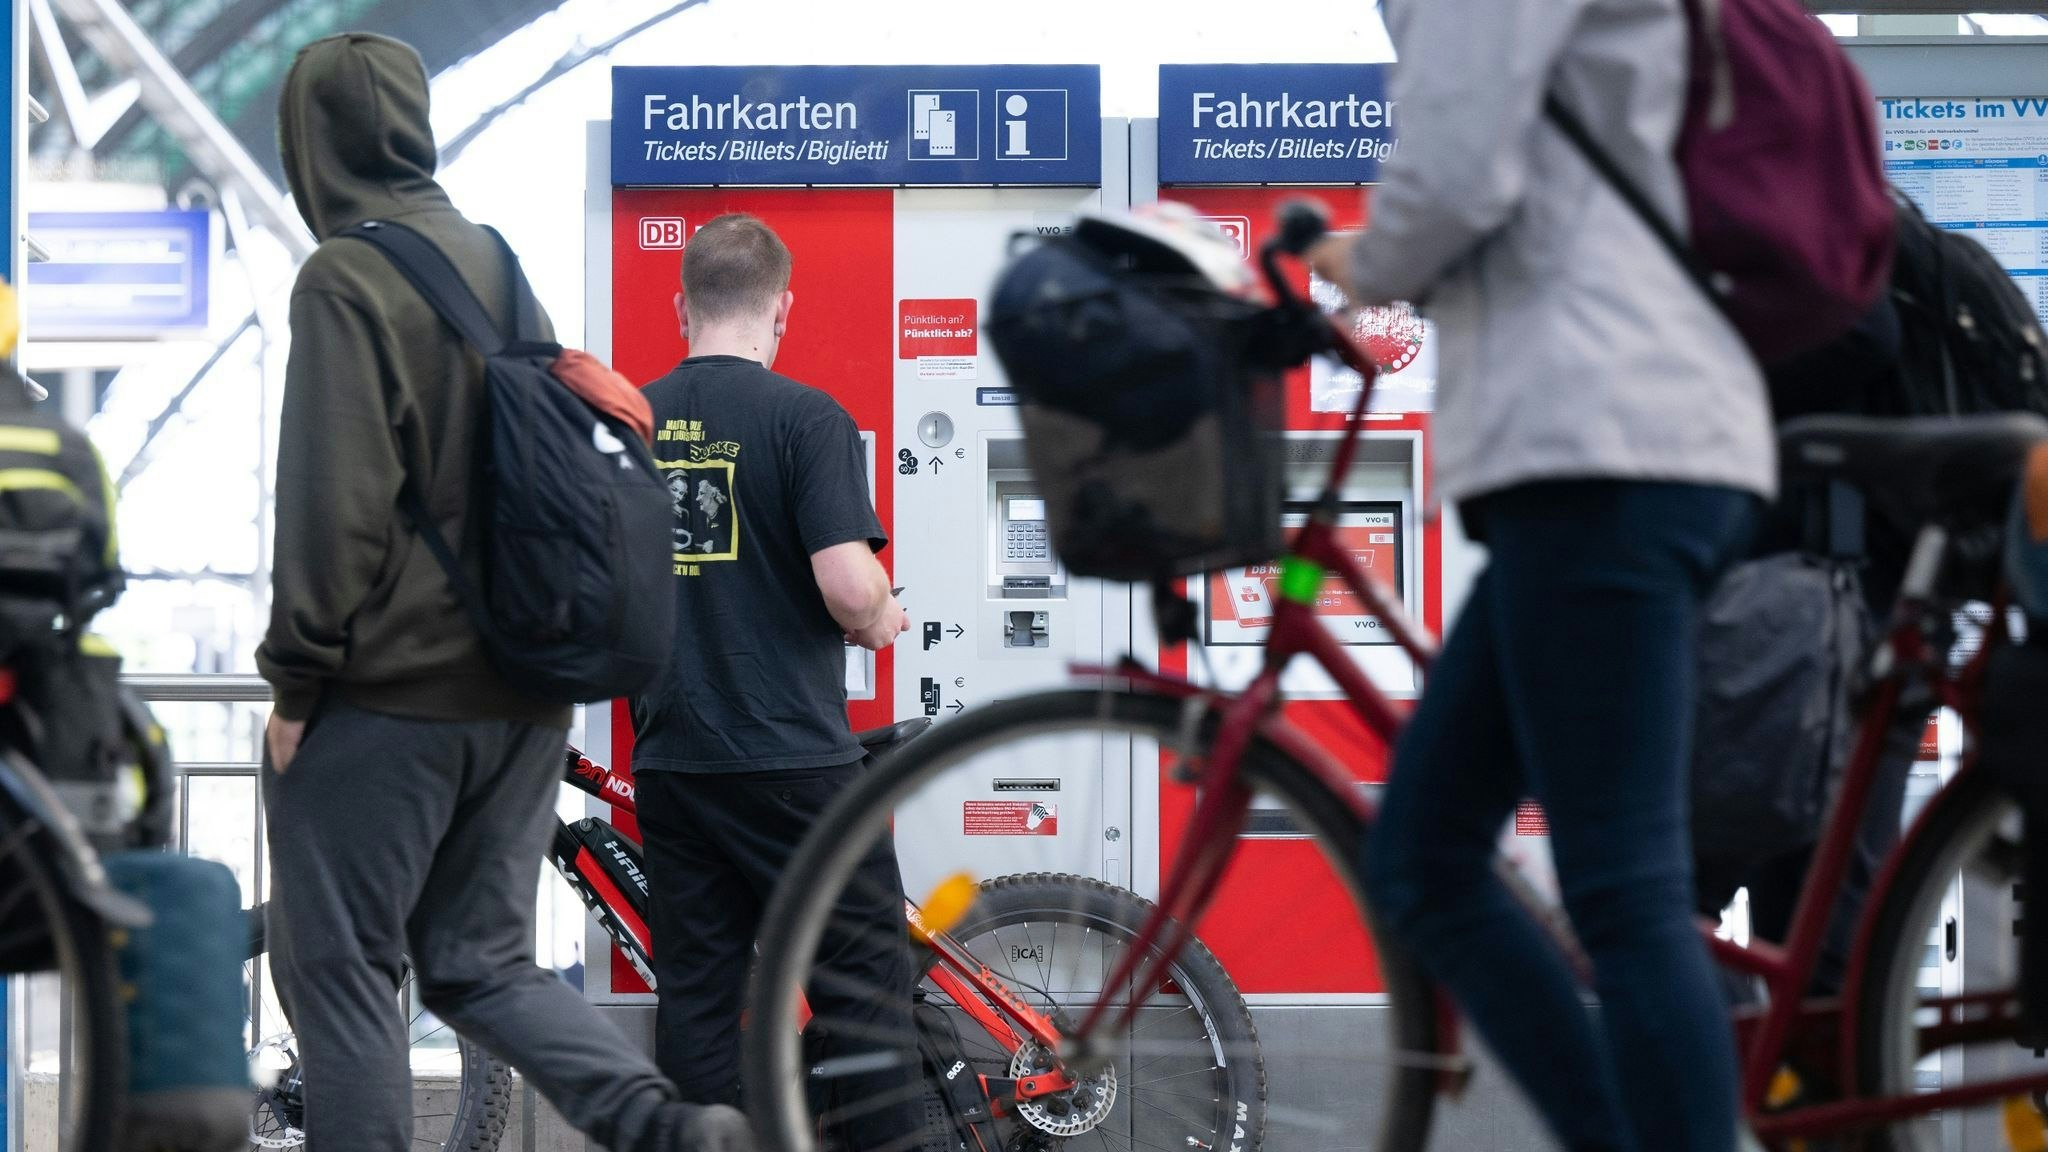 Bahn und Fahrrad sollen besser miteinander kombinierbar werden, fordern Bahn-Verbände und Unternehmen. Foto: dpa/Kahnert